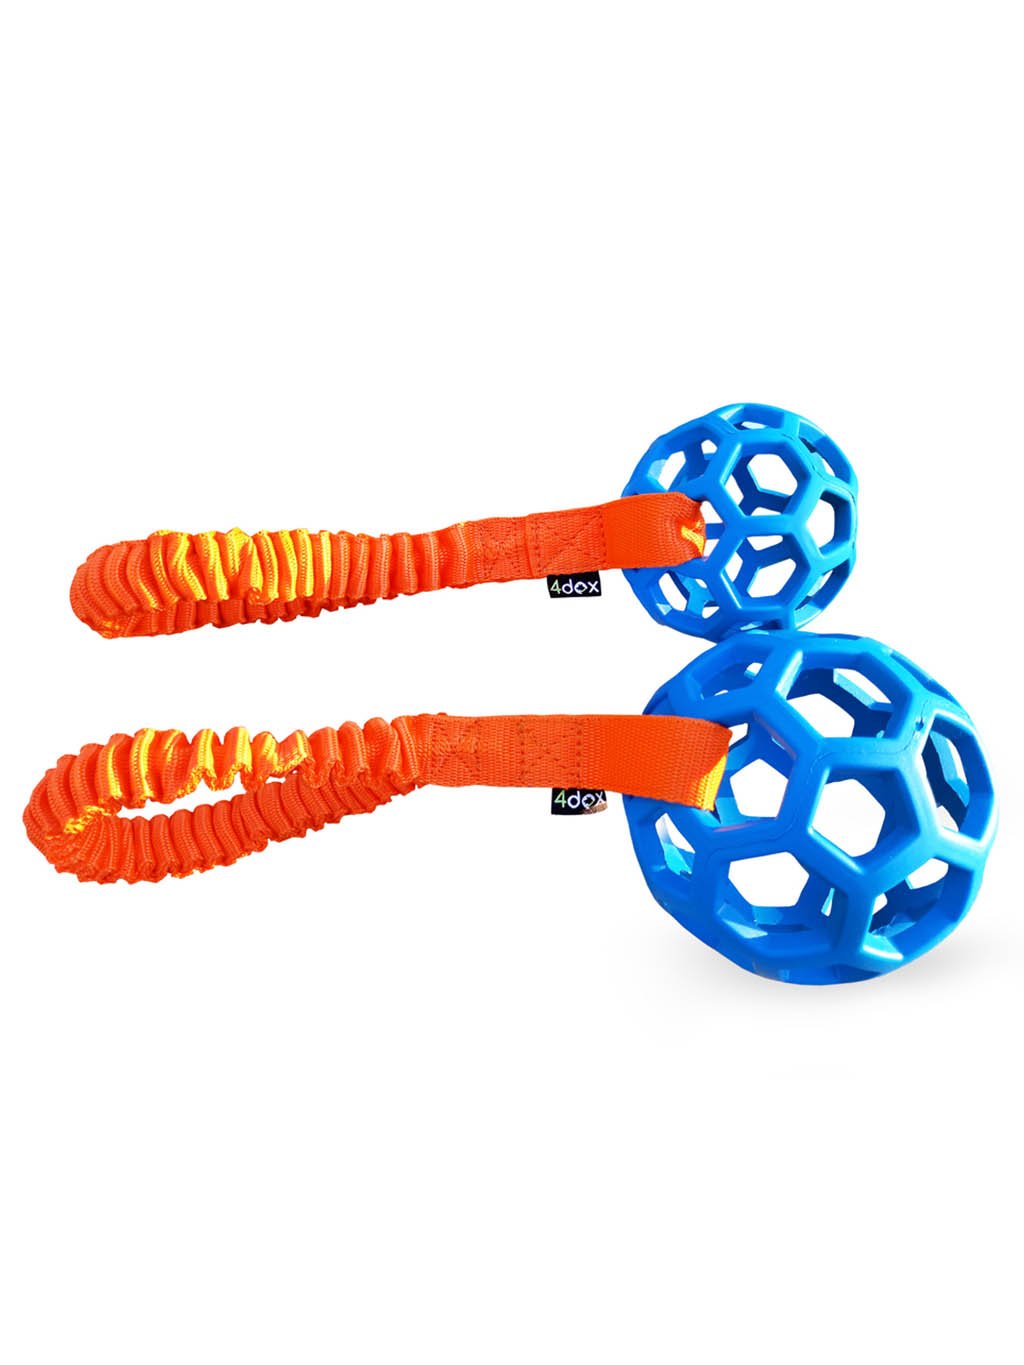 Přetahovadlo - děrovaný míč s amortizérem 11 cm modrá/oranž 4dox